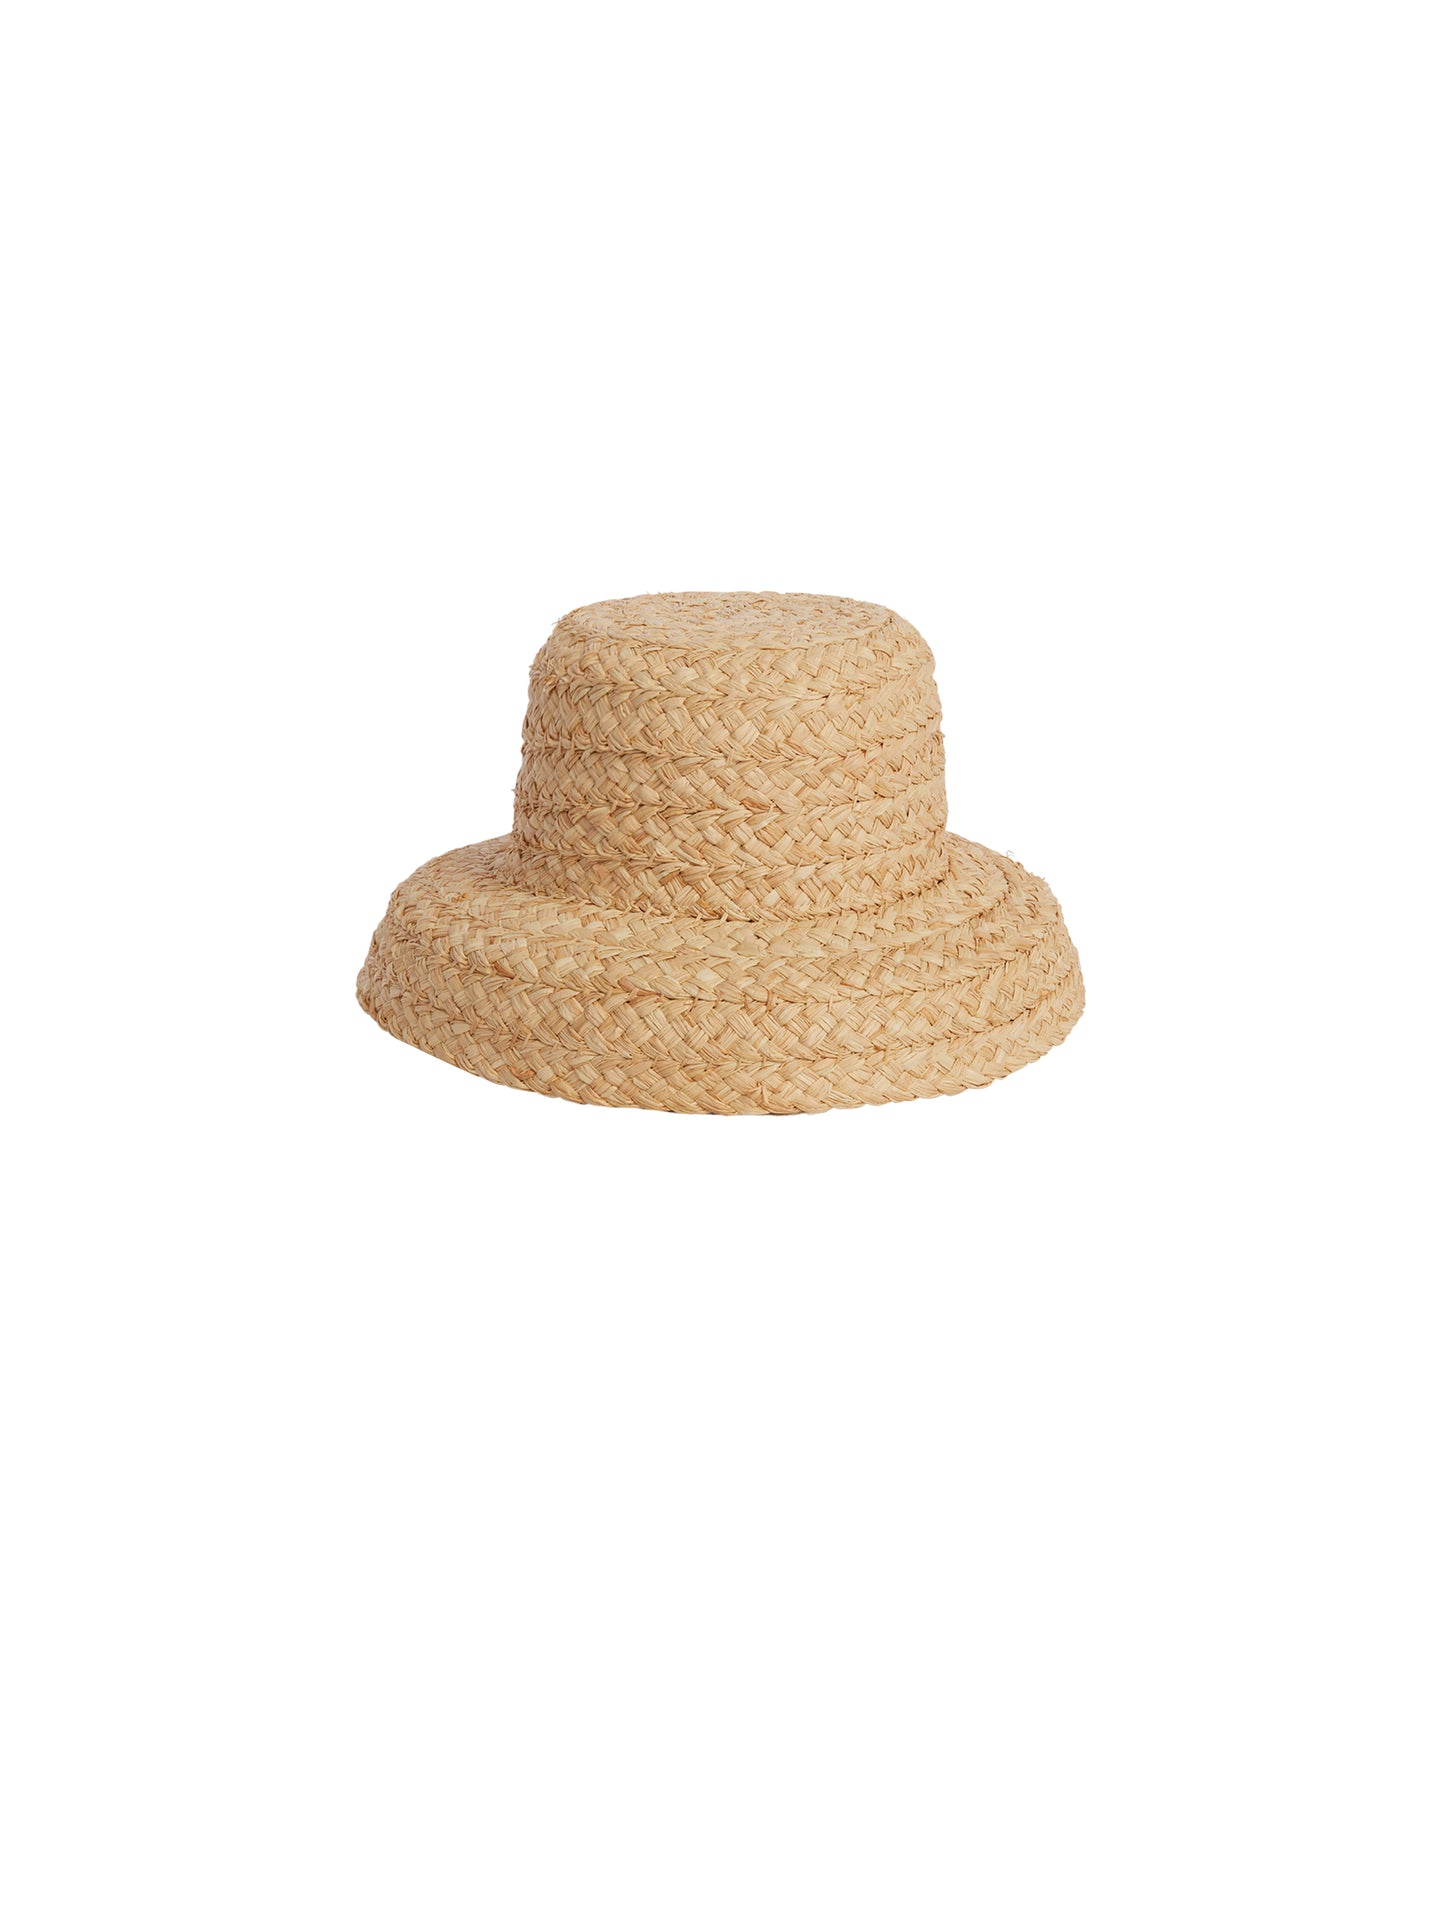 Garden Hat | Straw